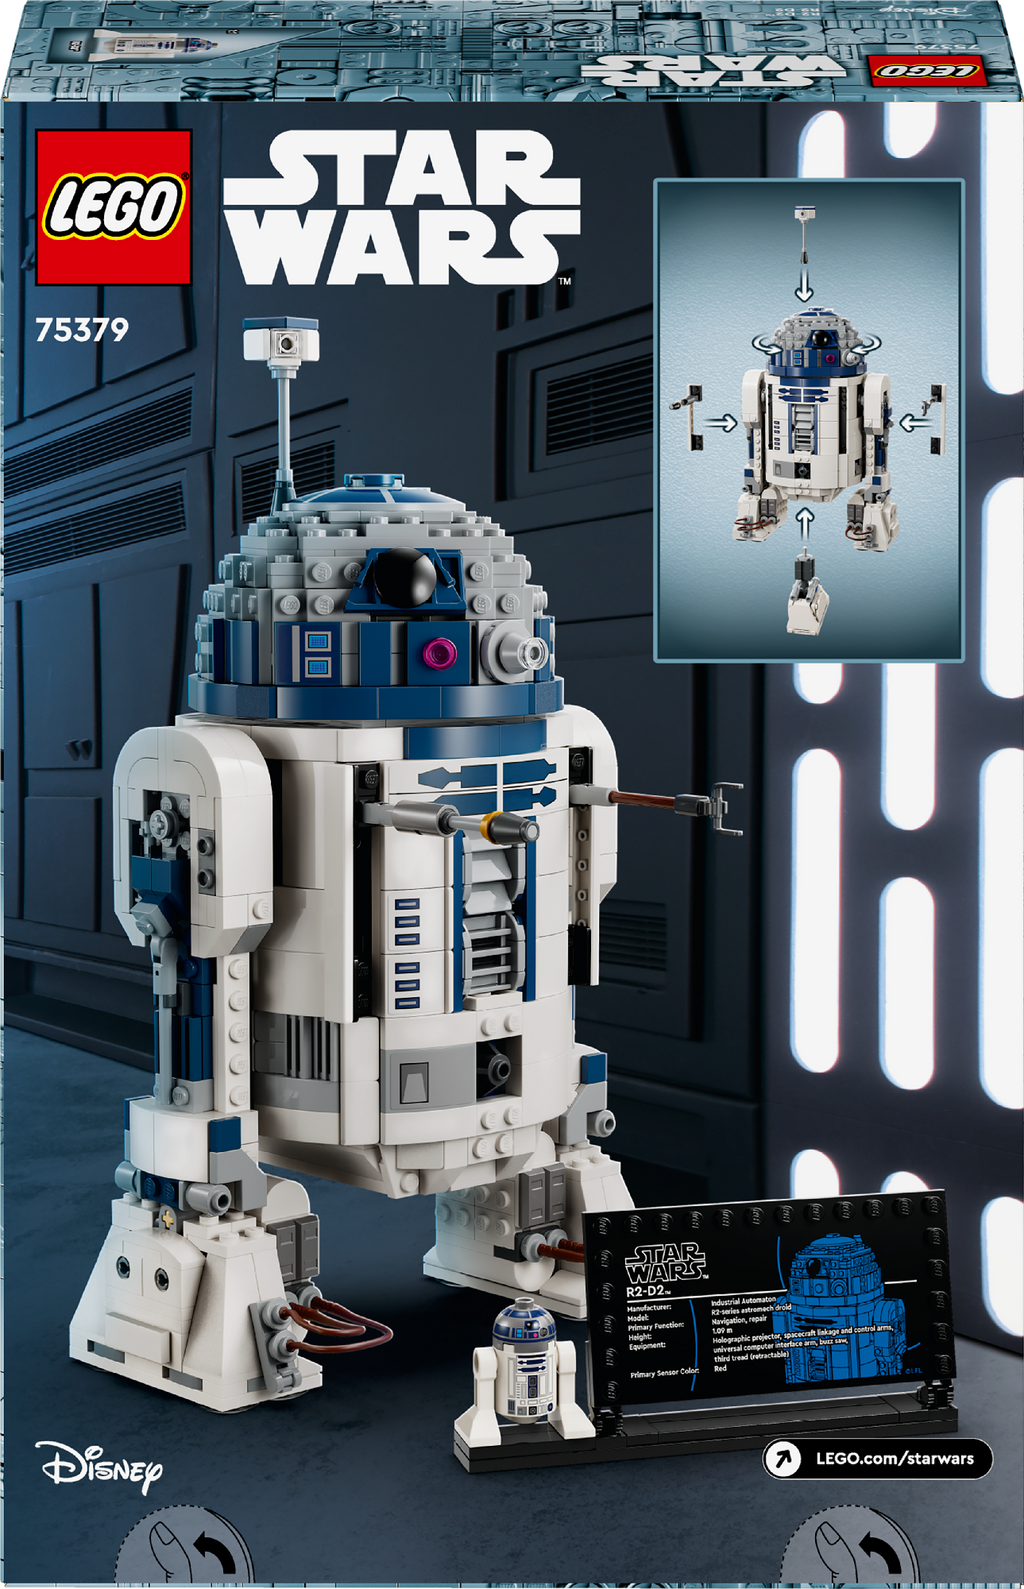 LEGO STAR WARS R2-D2 75379 AGE: 10+